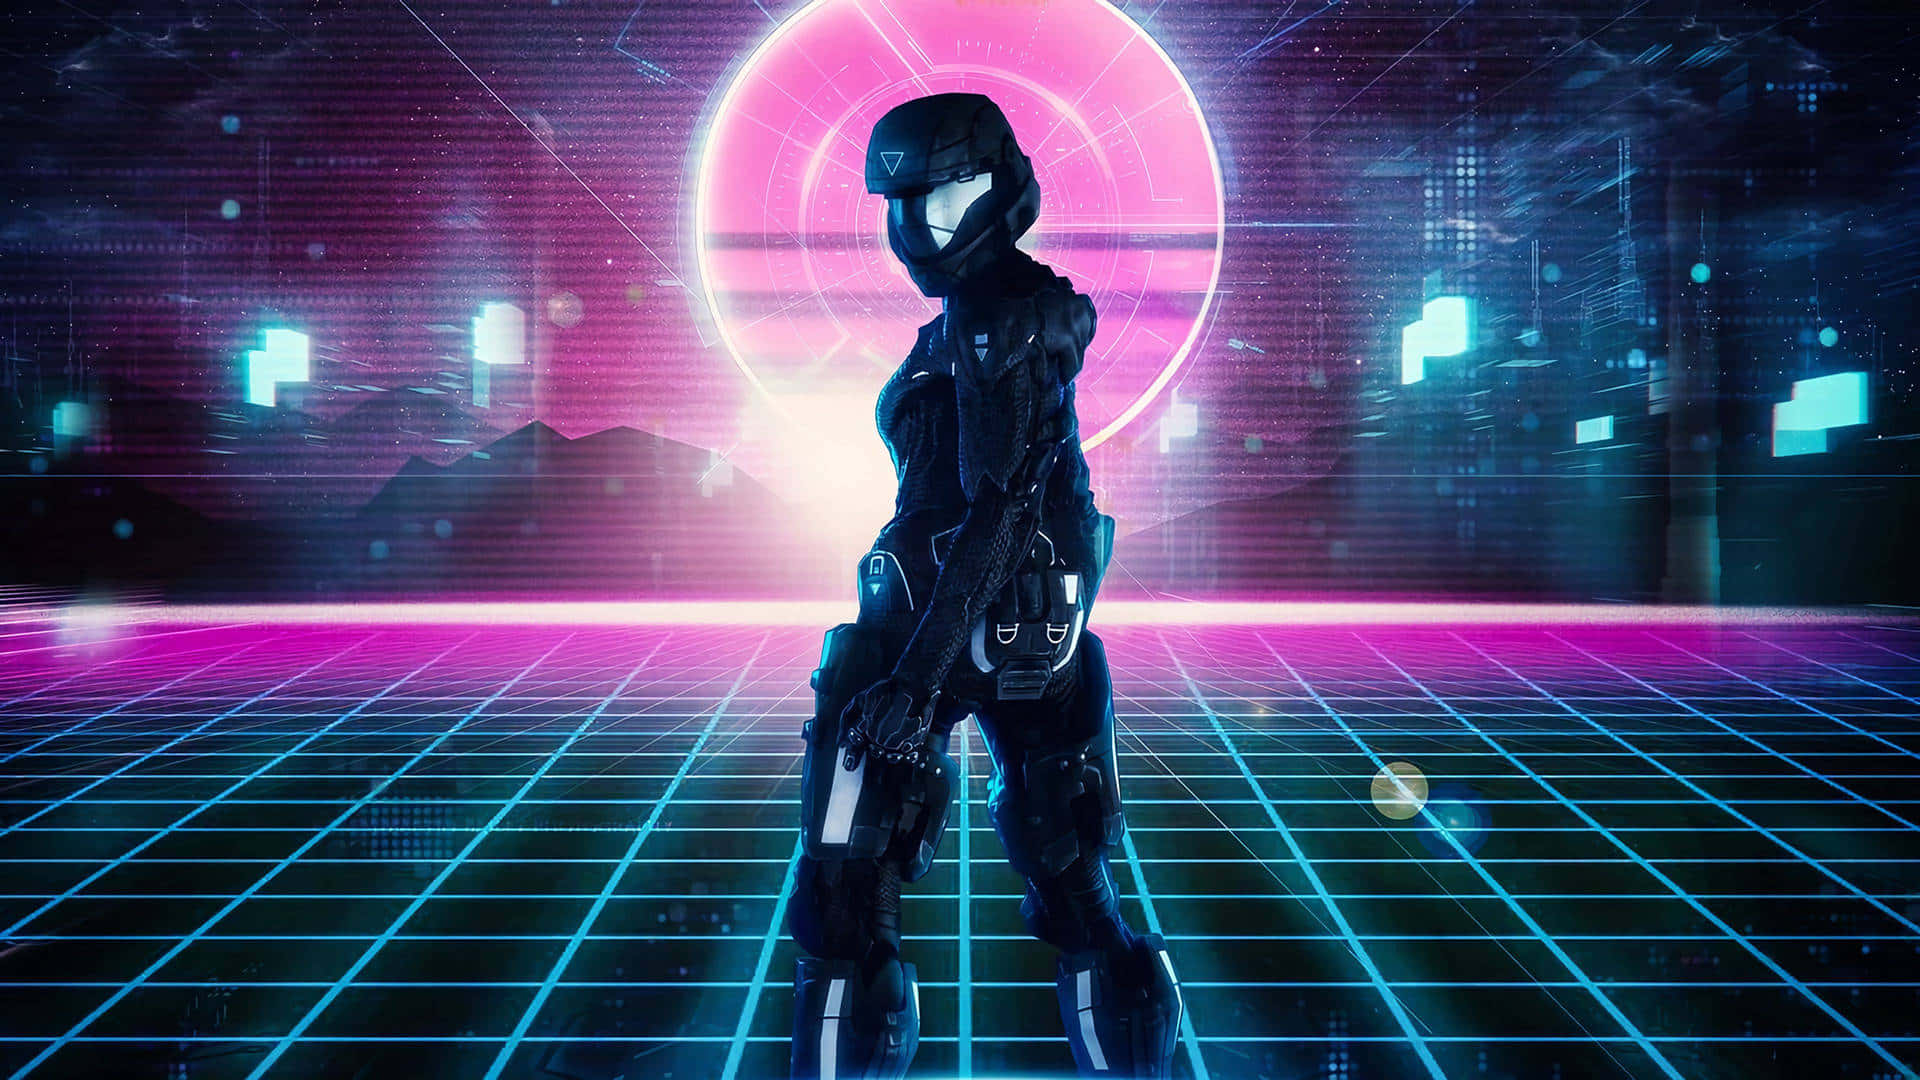 Unalaptop Angular De Estilo Cyberpunk Con Contorno De Neón Y Acentos En Azul Brillante. Fondo de pantalla